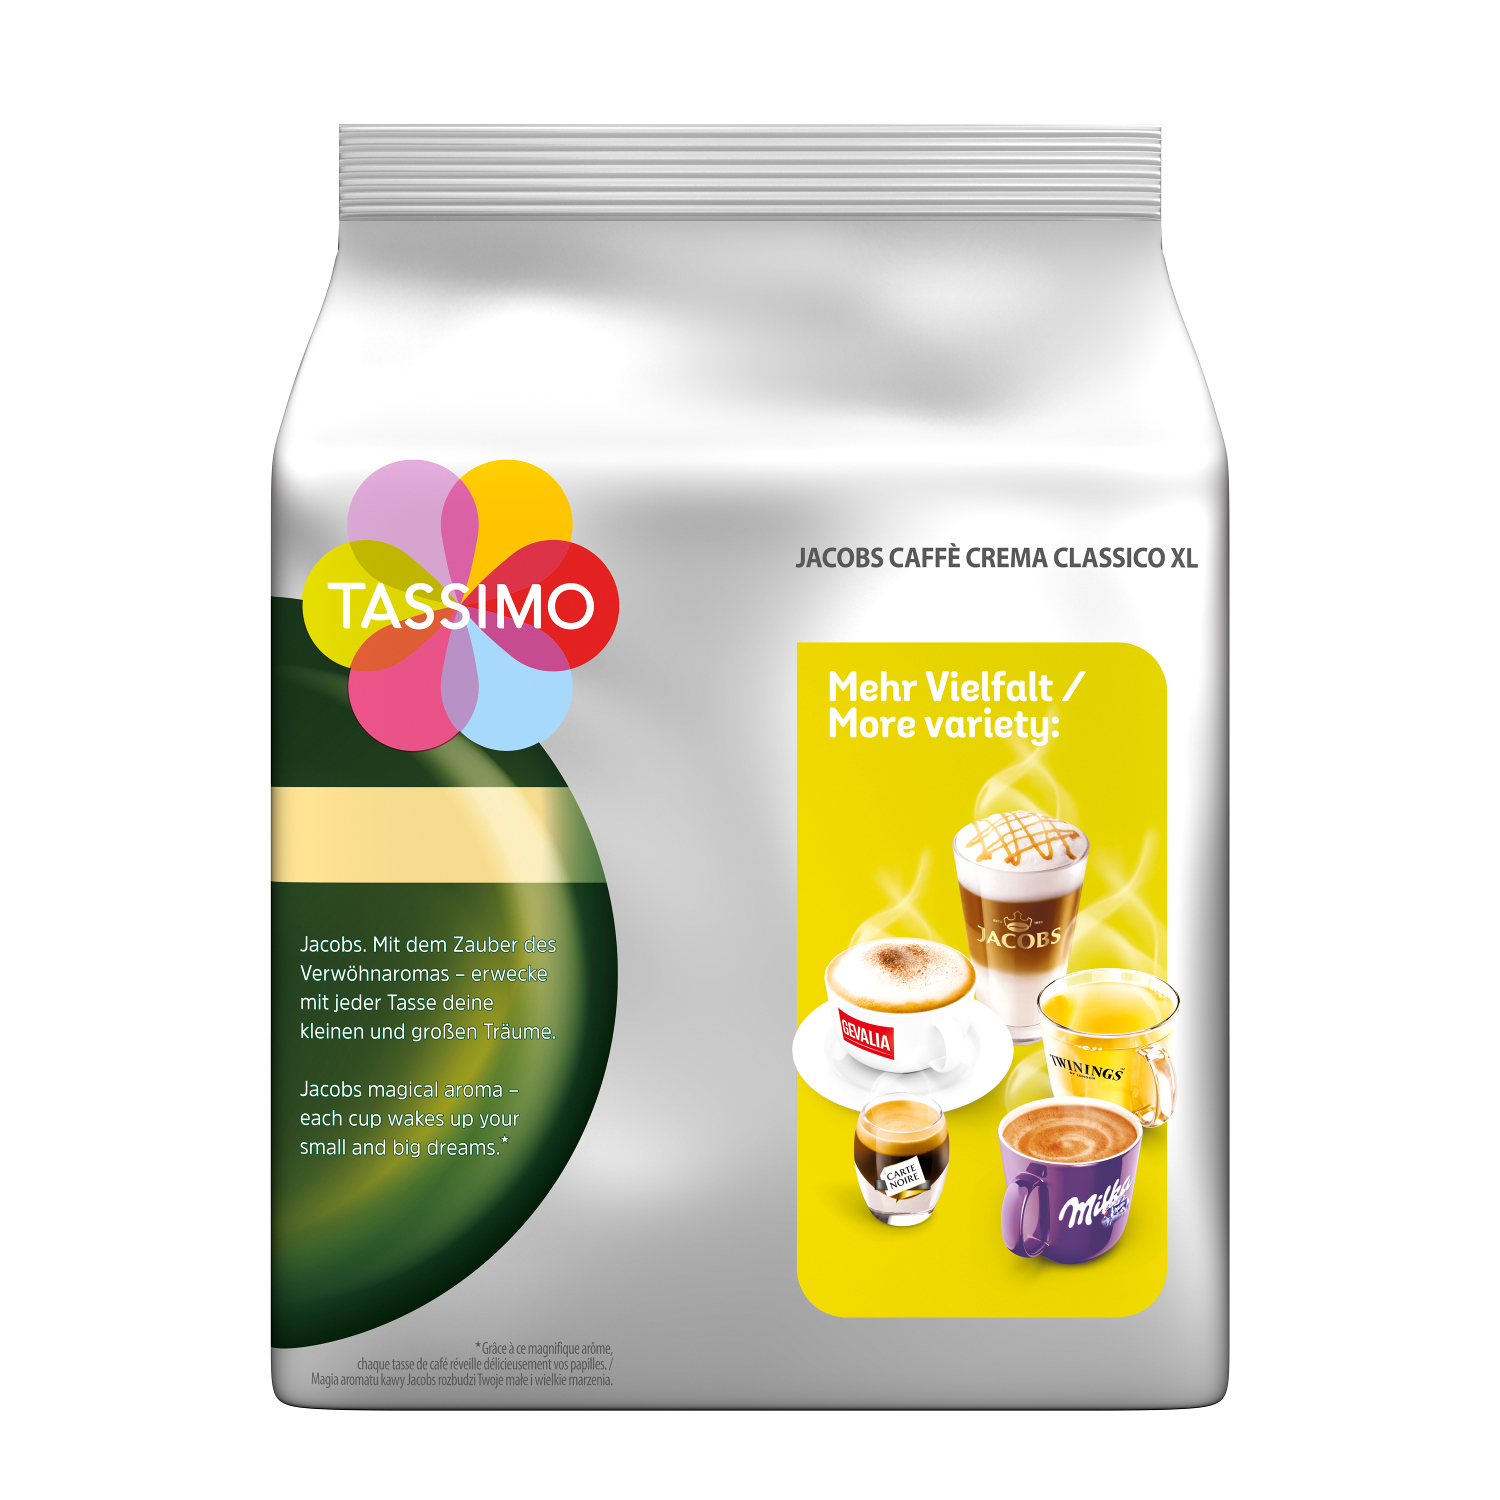 TASSIMO Vielfaltspaket Mild Sorten Becherportionen Krönung Kaffeekapseln XL Intenso Crema Café (Tassimo Maschine (T-Disc System)) 5 Morning